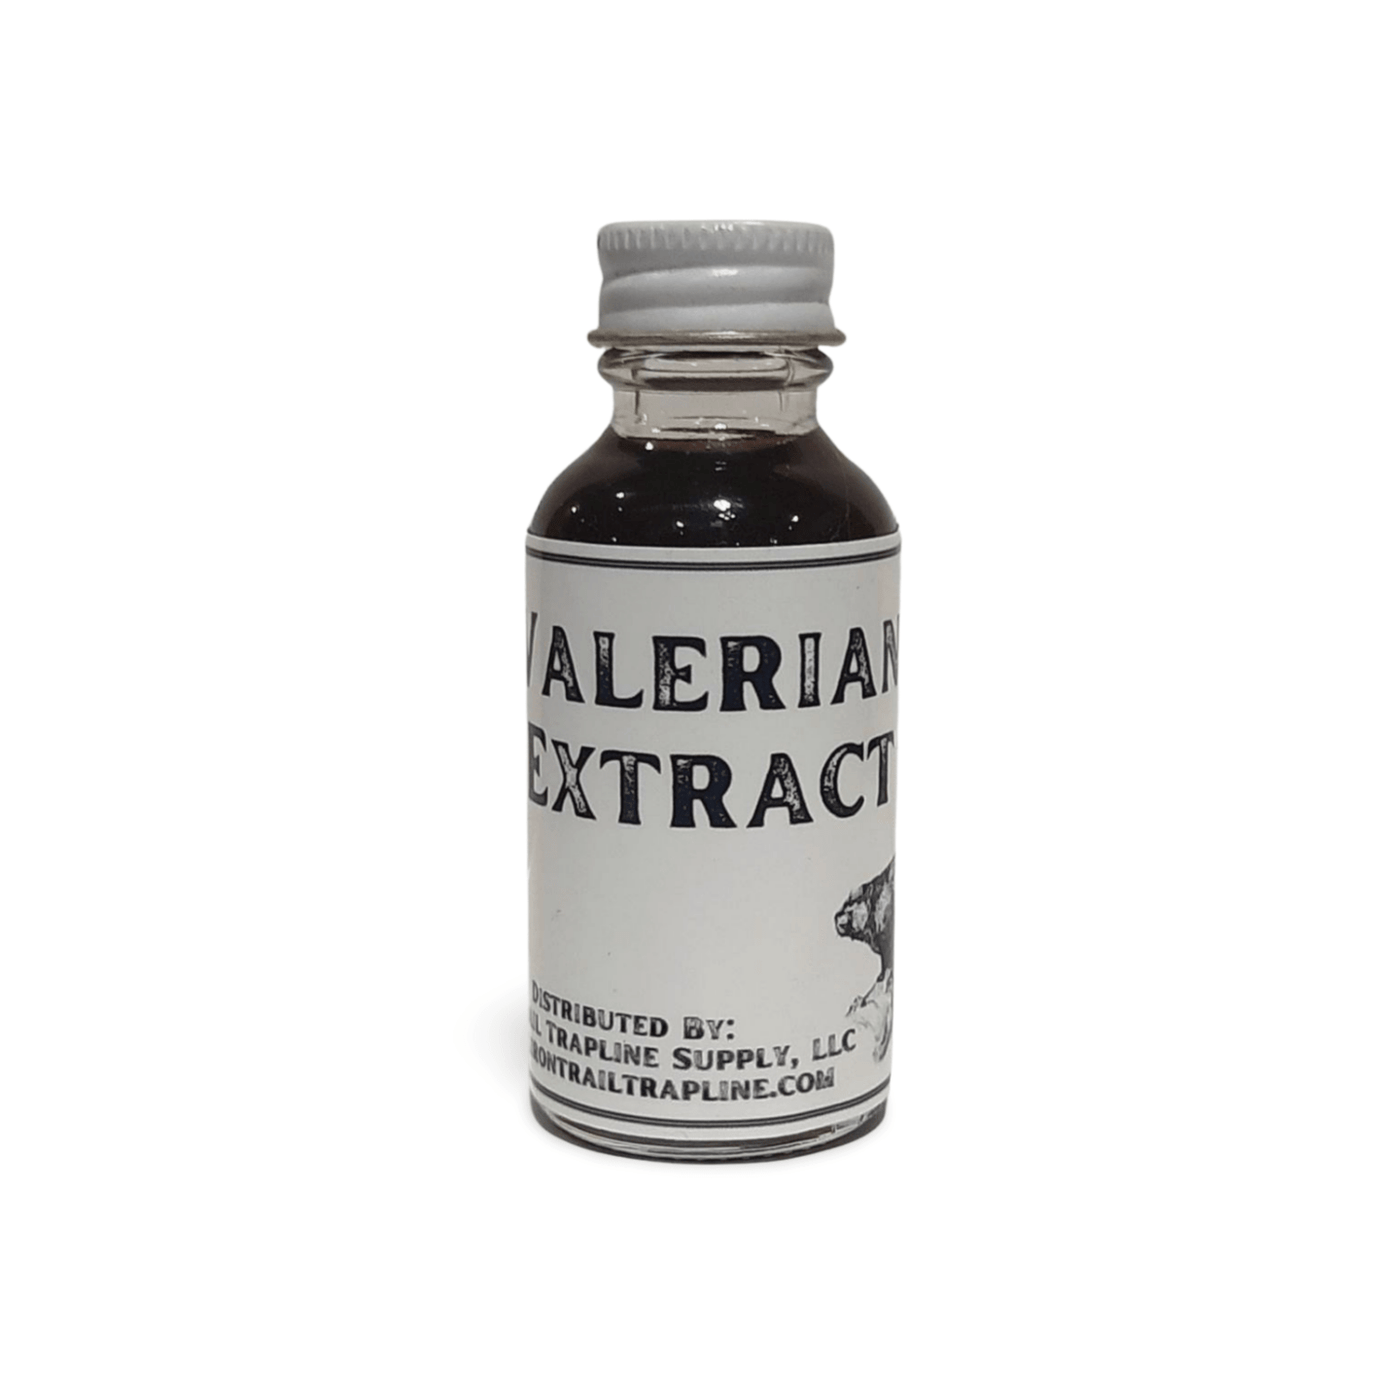 Valerian Extract